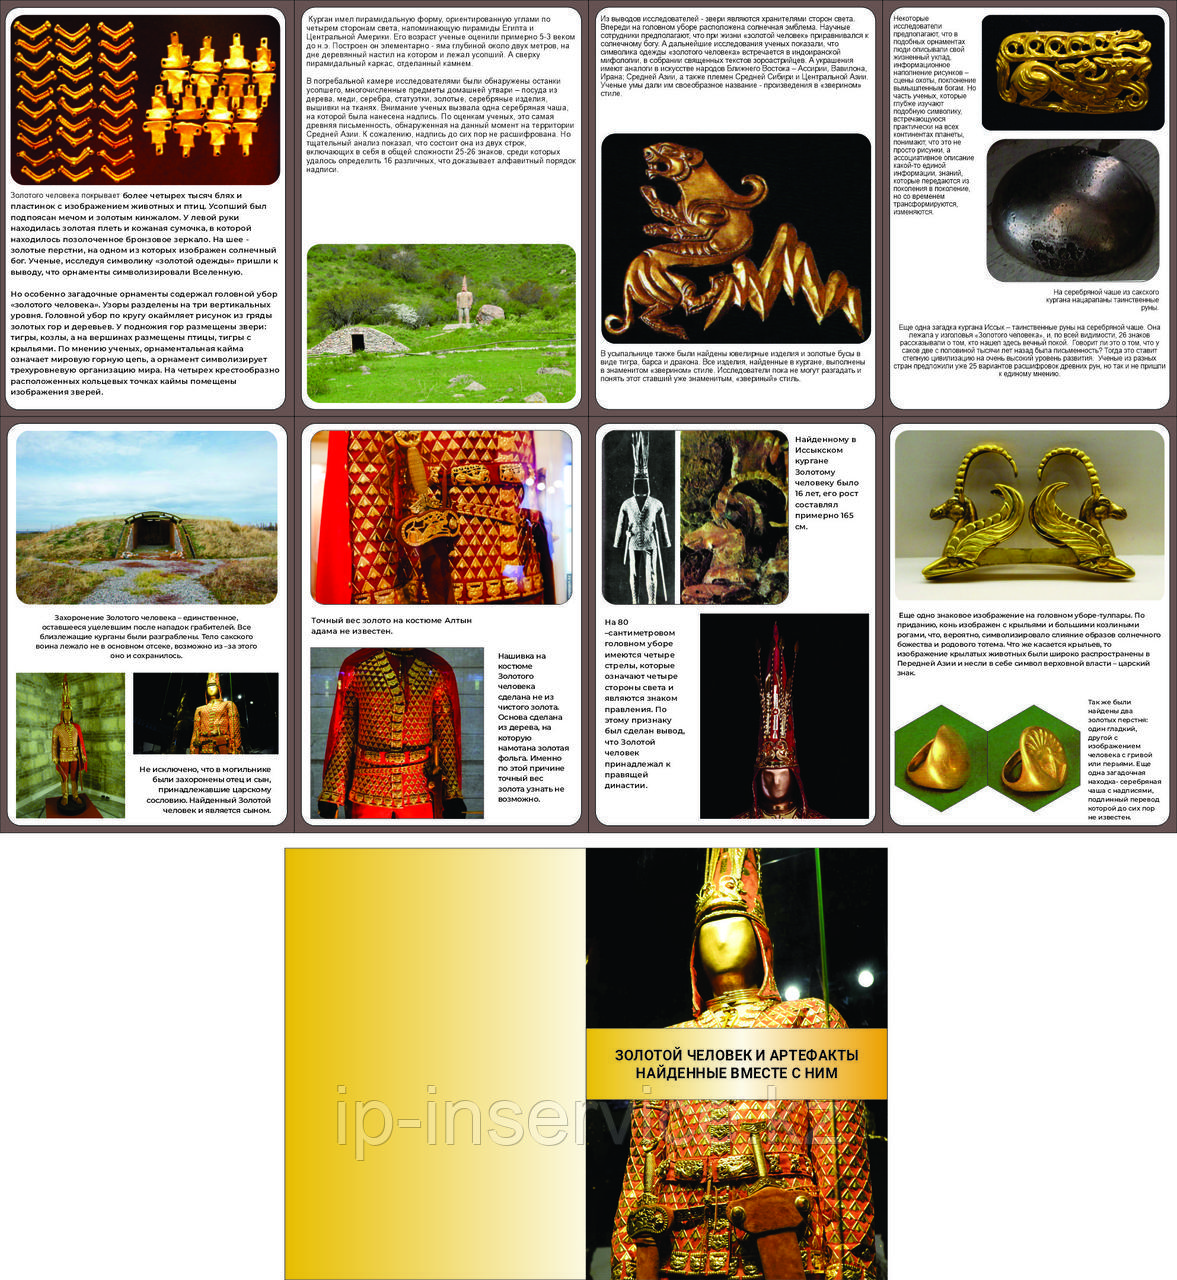 Папка-комплект Золотой человек и артефакты найденные вместе с ним